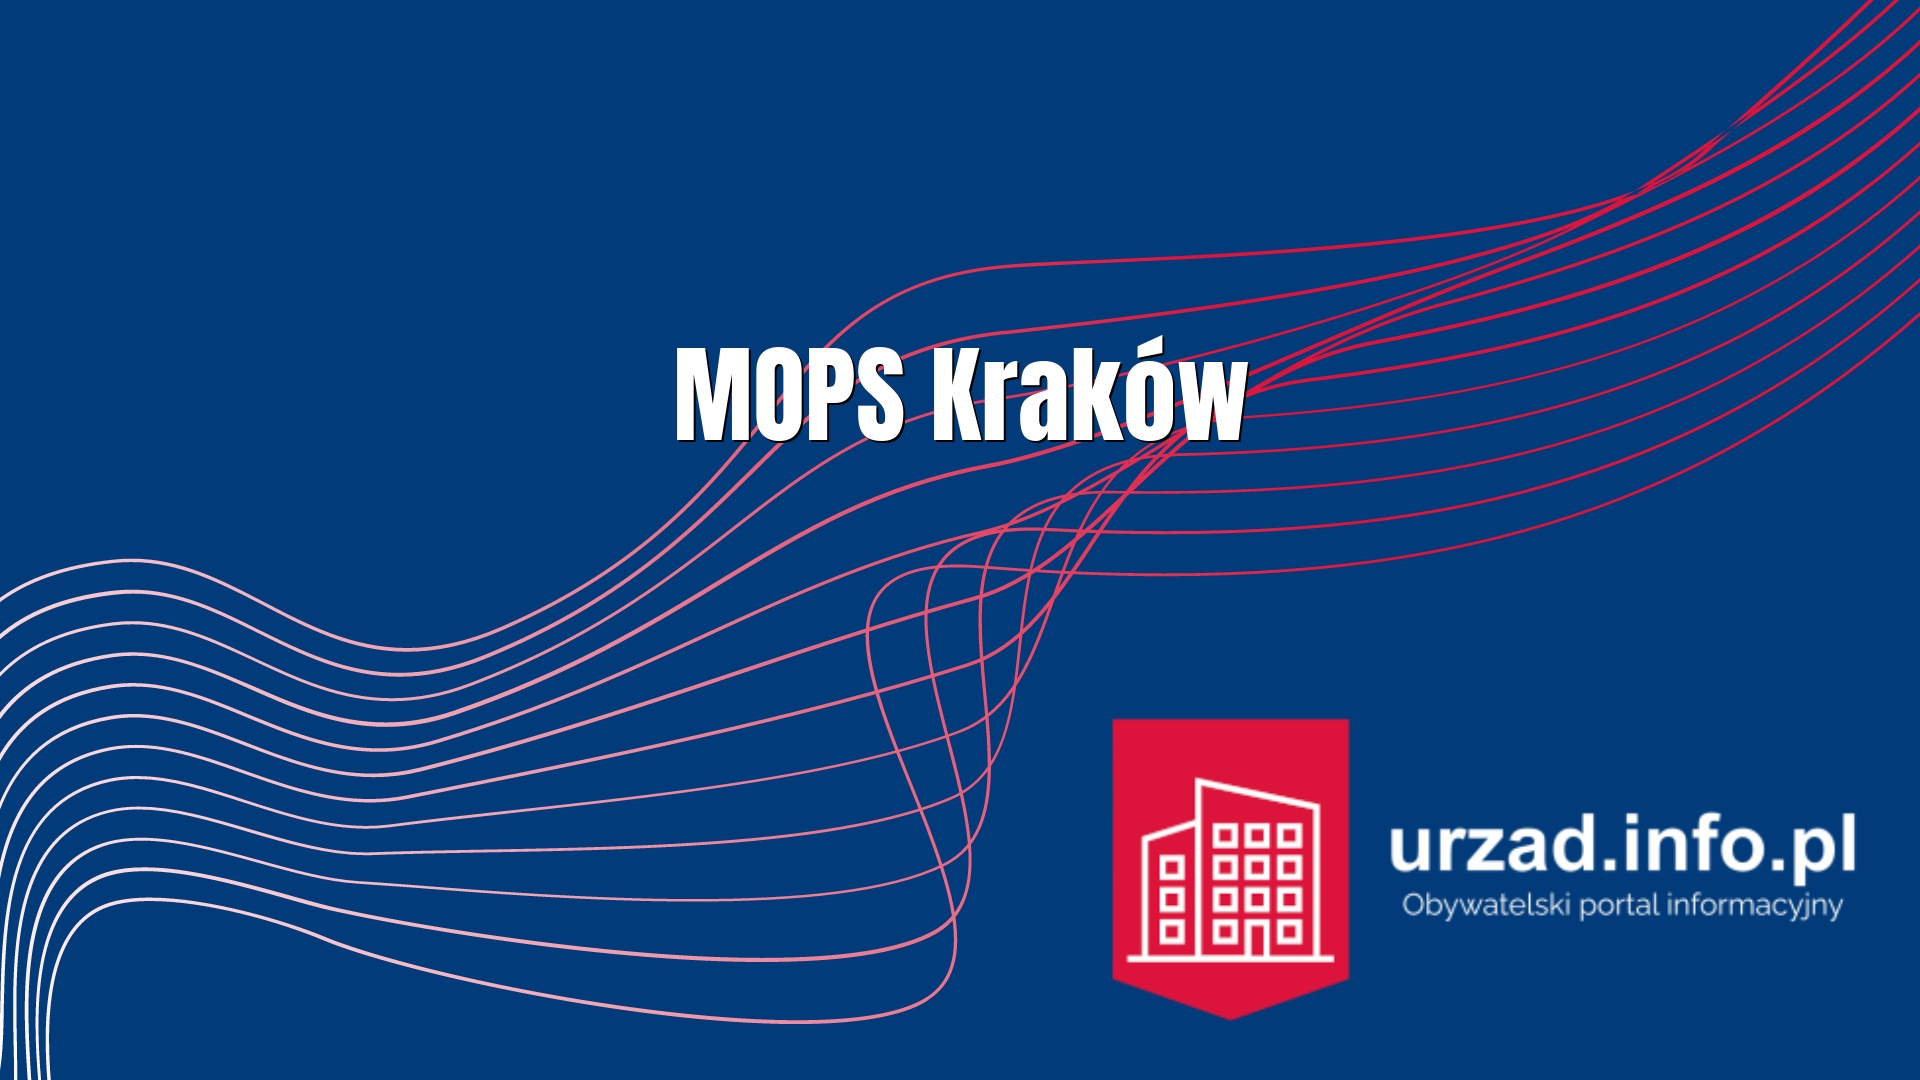 MOPS Kraków